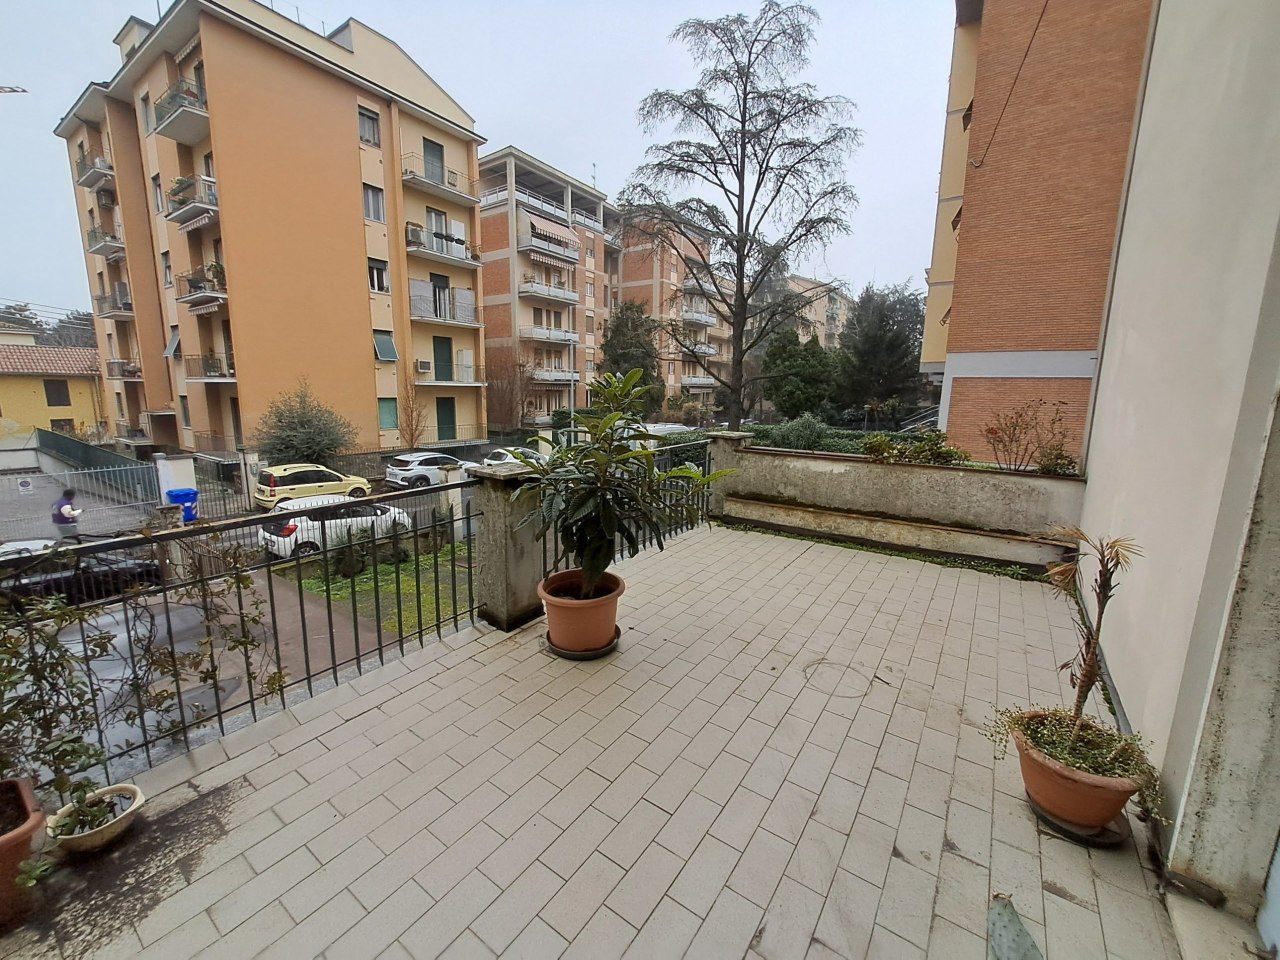 Appartamento in vendita a Parma, 4 locali, prezzo € 240.000 | PortaleAgenzieImmobiliari.it